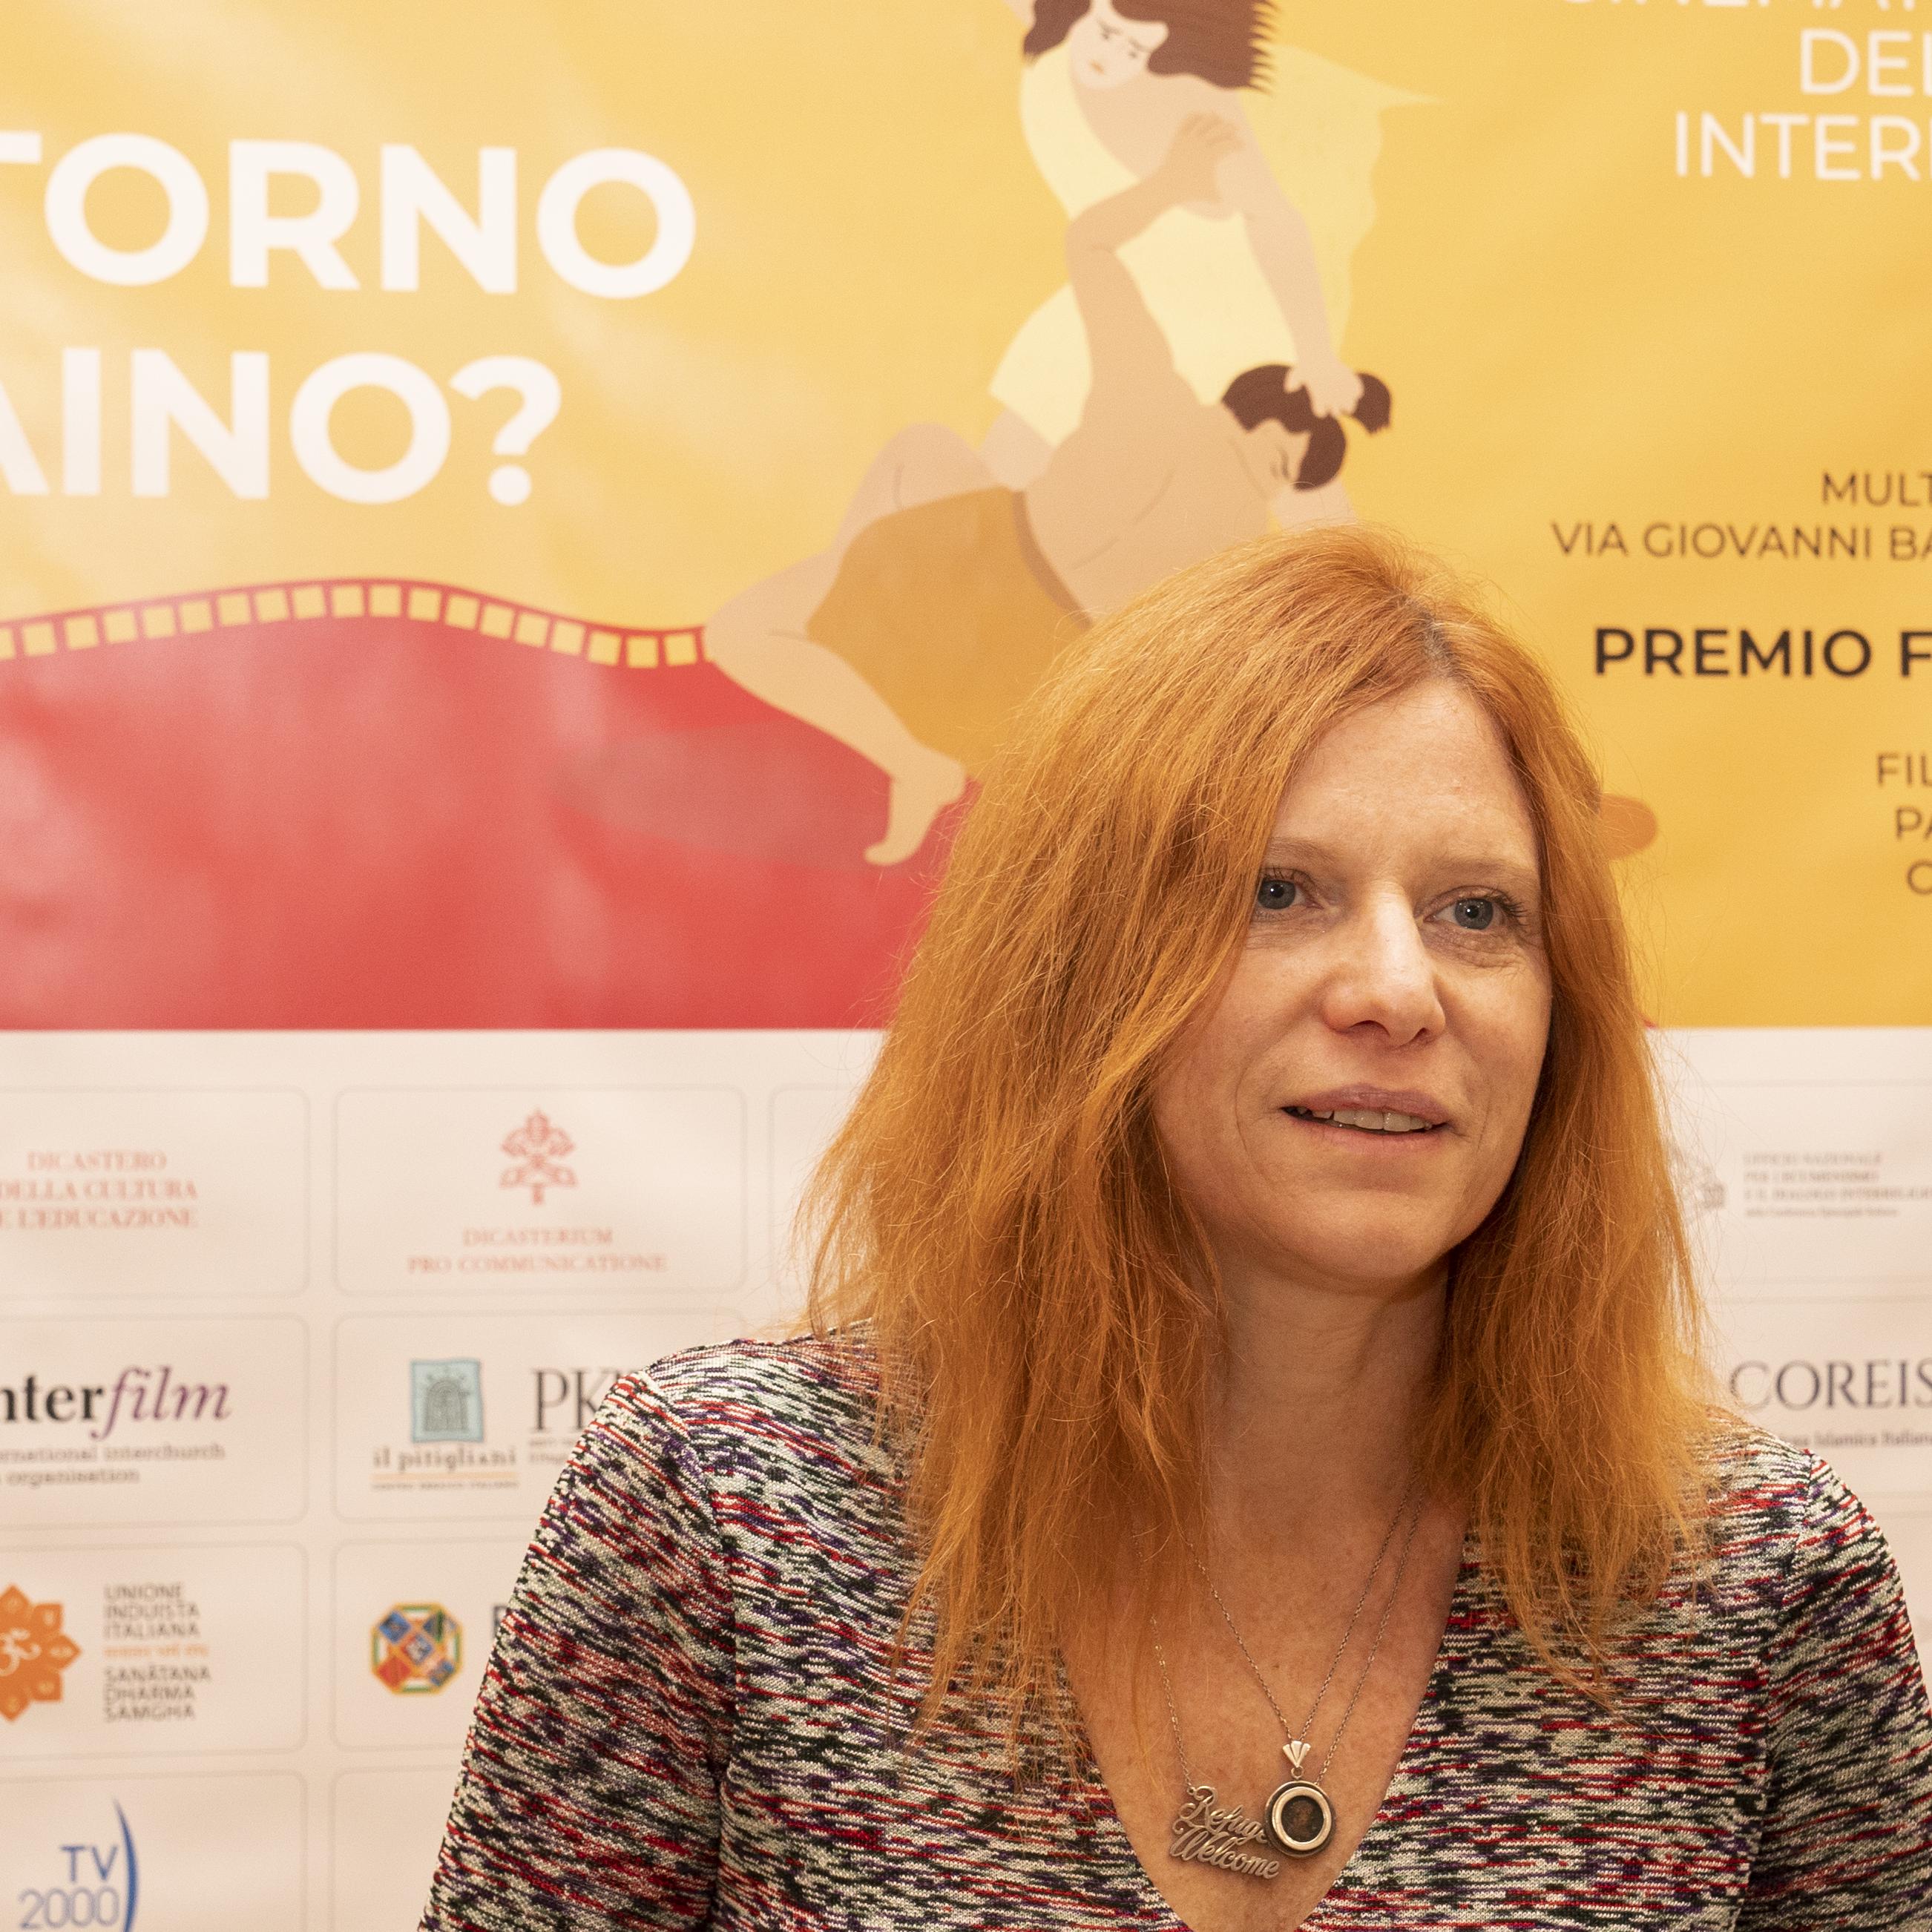 Premio Fuoricampo a Chiara di Susanna Nicchiarelli